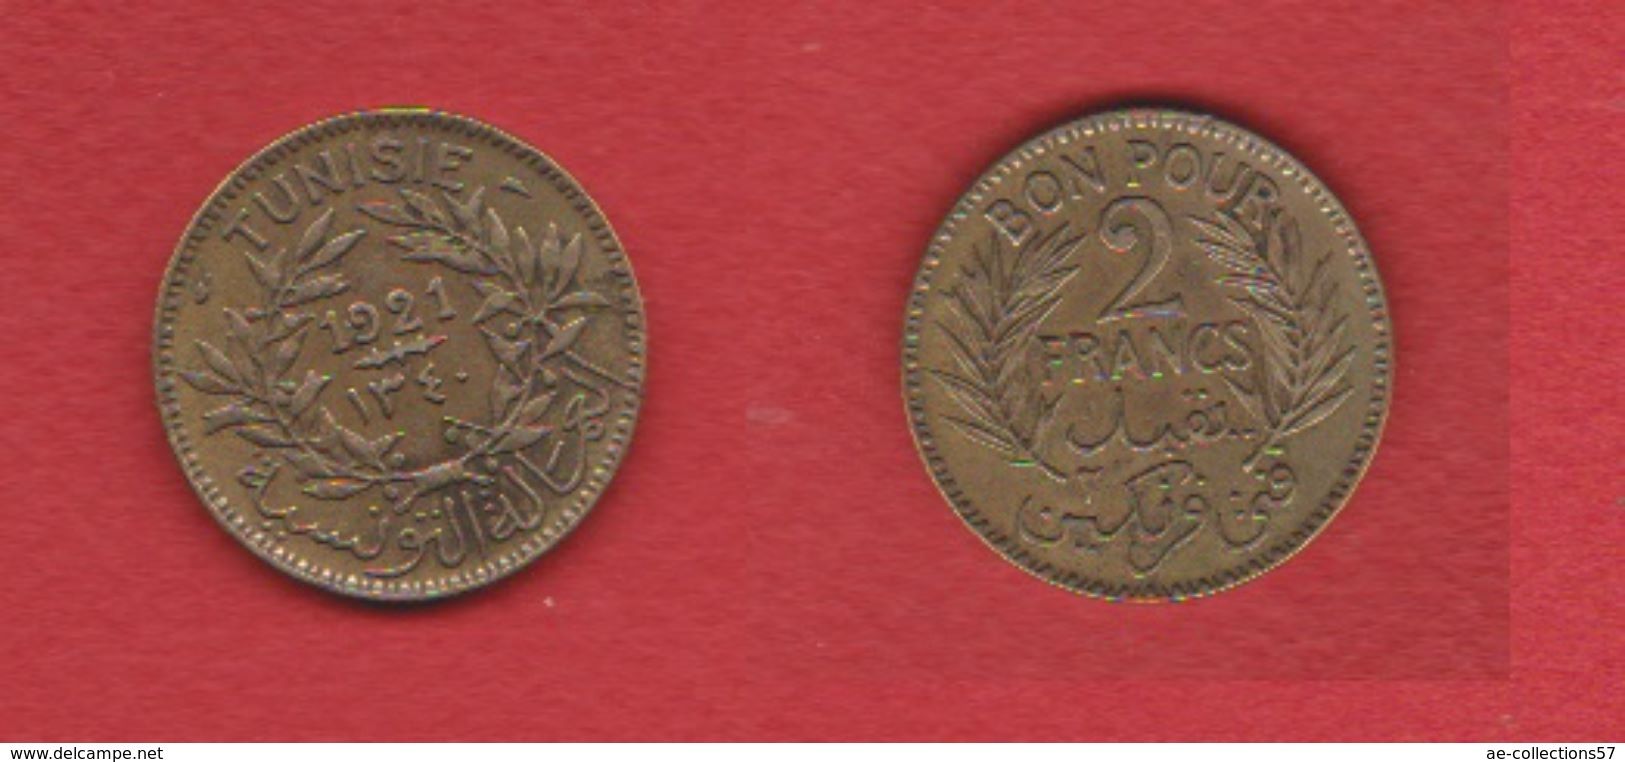 Tunisie / KM 248 / 2 Francs 1921 / TTB - Tunisie